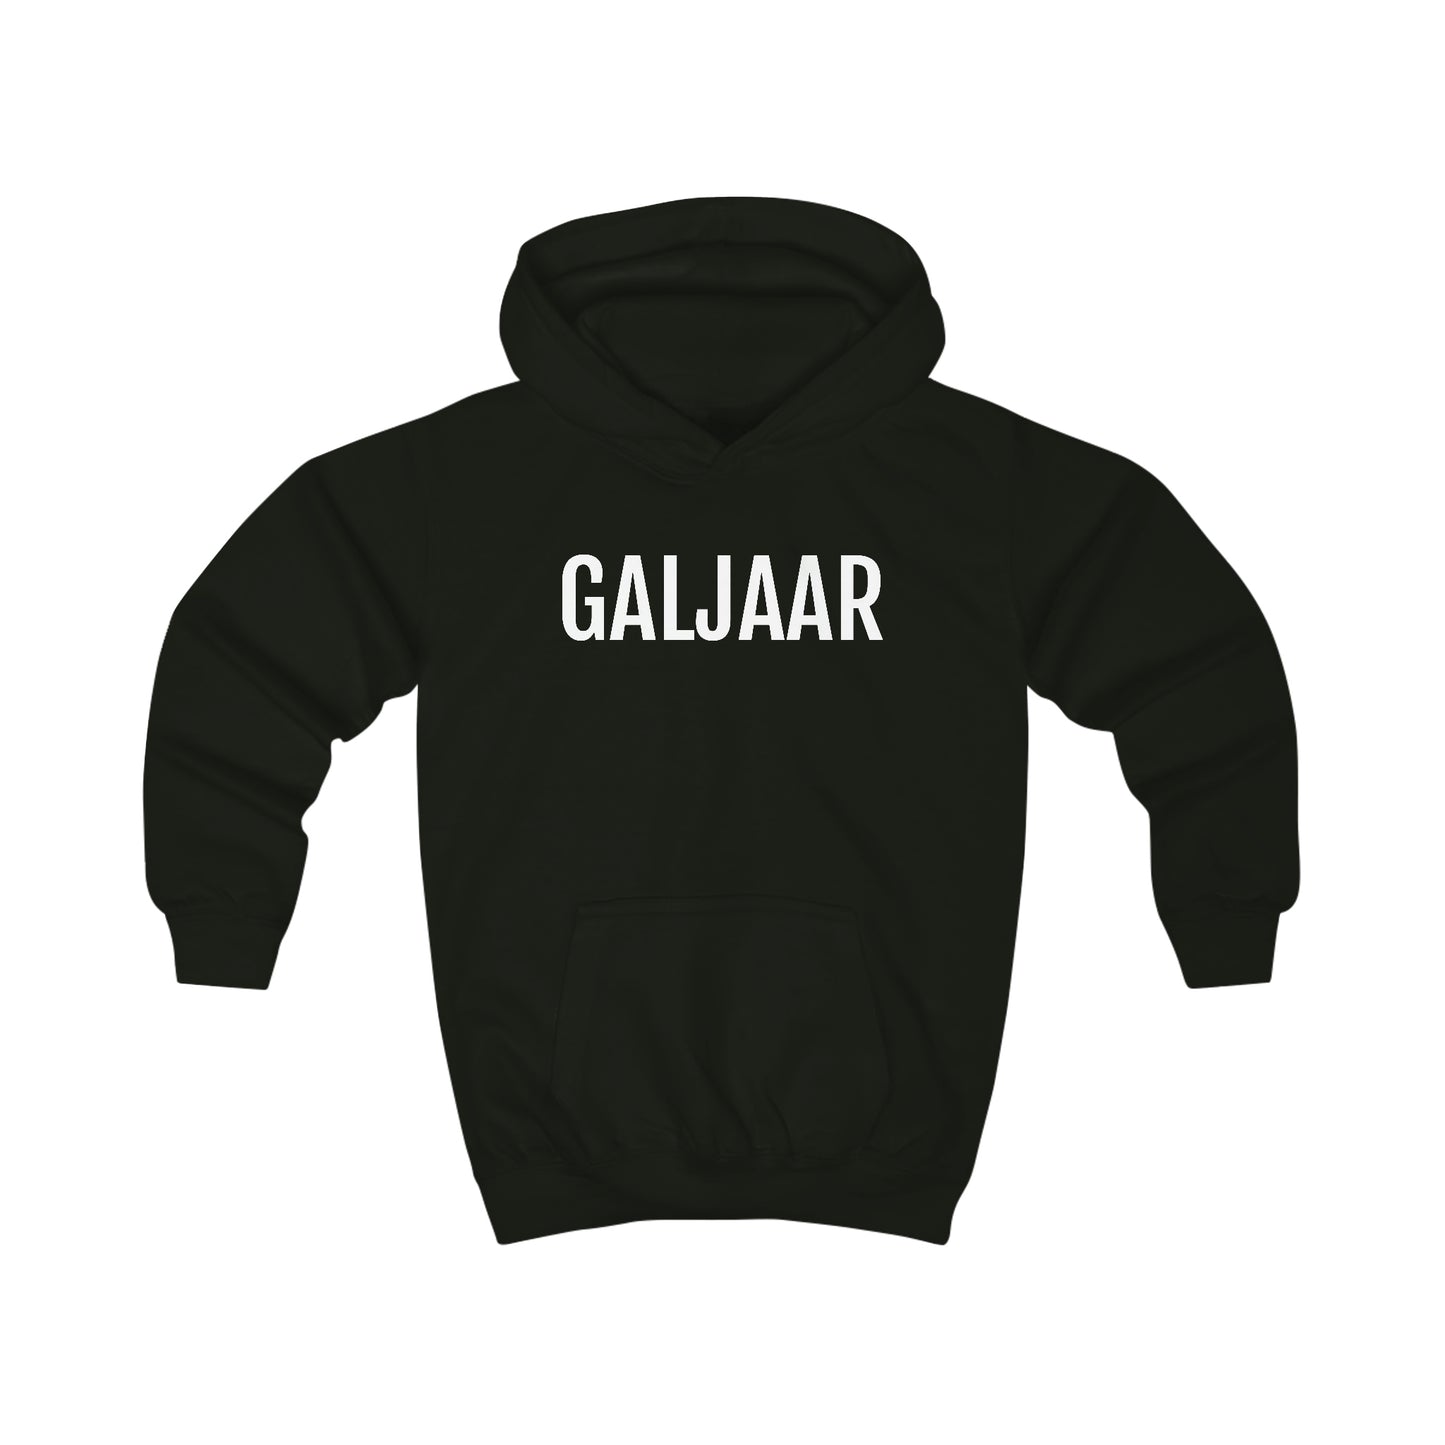 Galjaar | Unisex hoodie uit Oost-Vlaanderen voor kinderen - Zwart